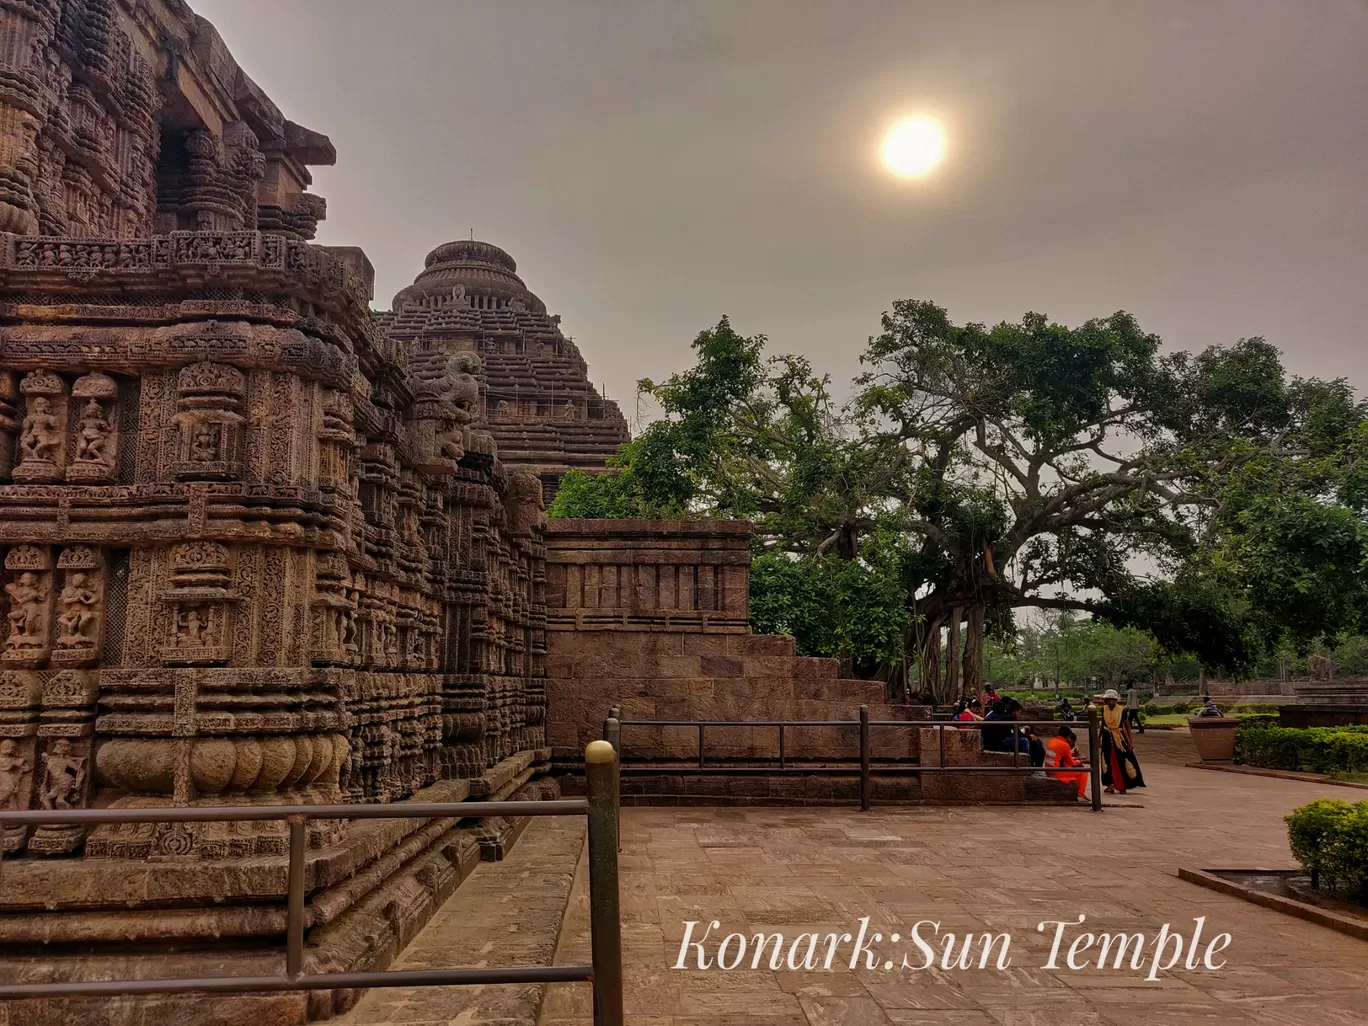 Photo of Konark Sun Temple By mithun baranwal